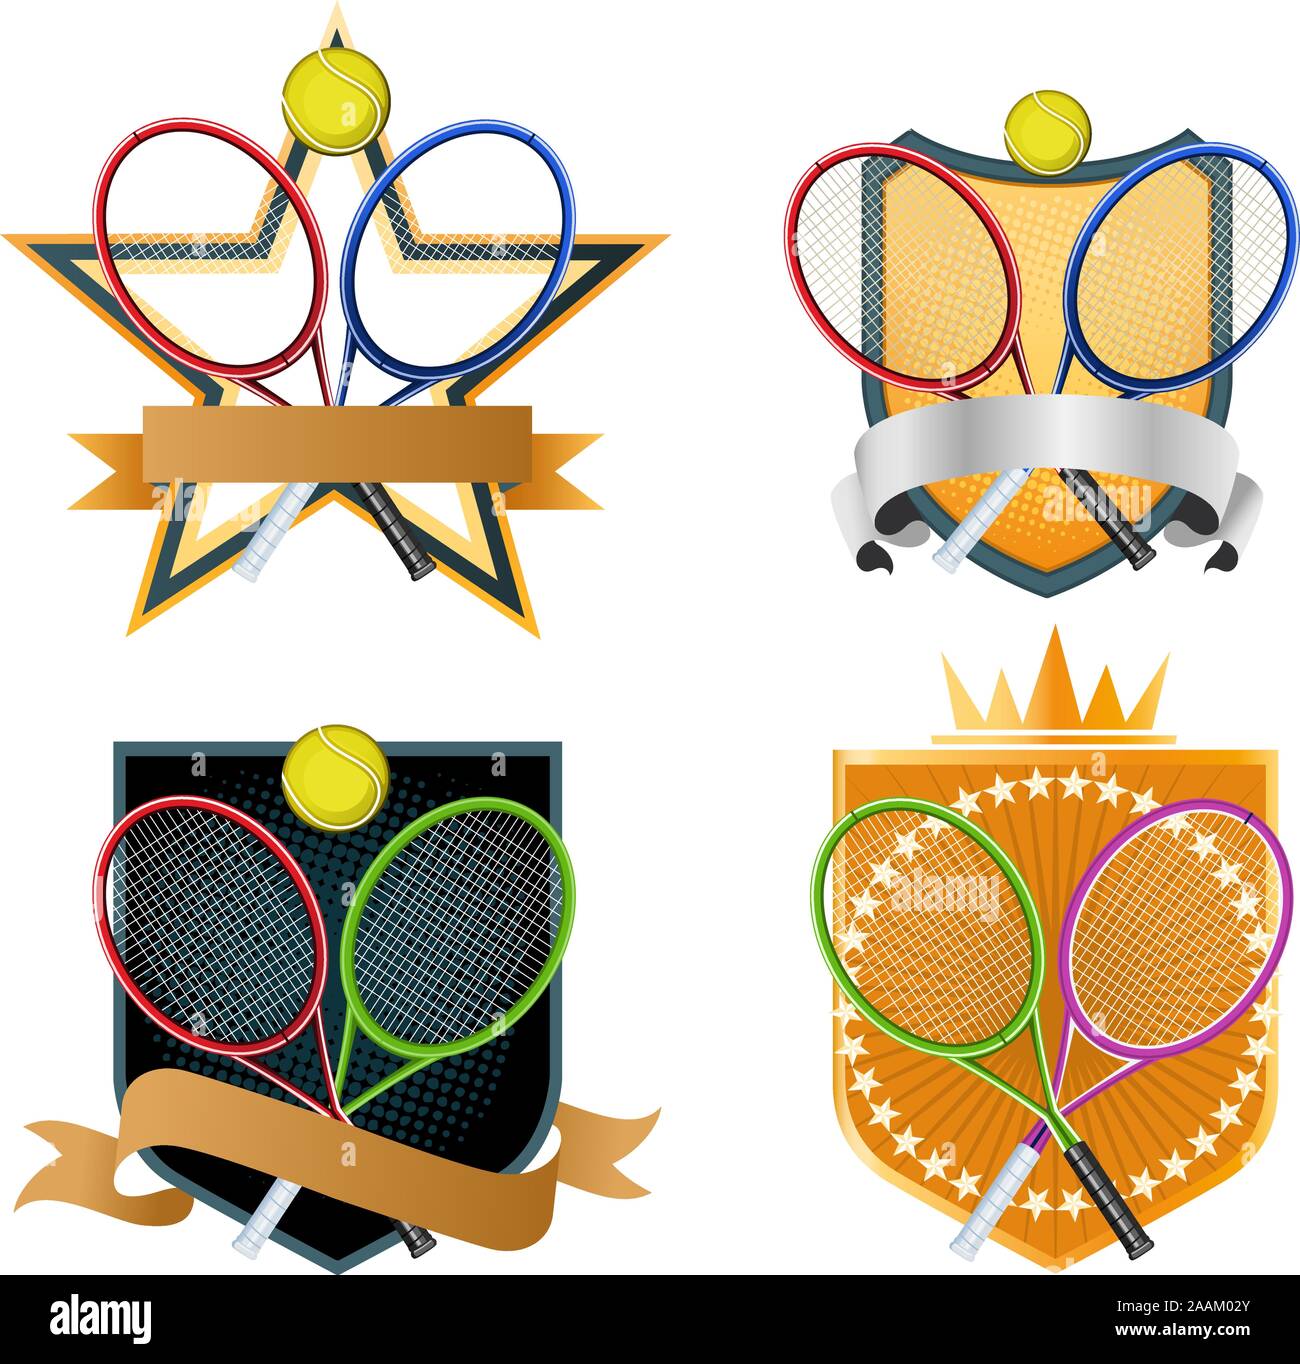 Sport Racchetta da Tennis palla emblema con corona e la forma a stella, banner illustrazione vettoriale. Illustrazione Vettoriale